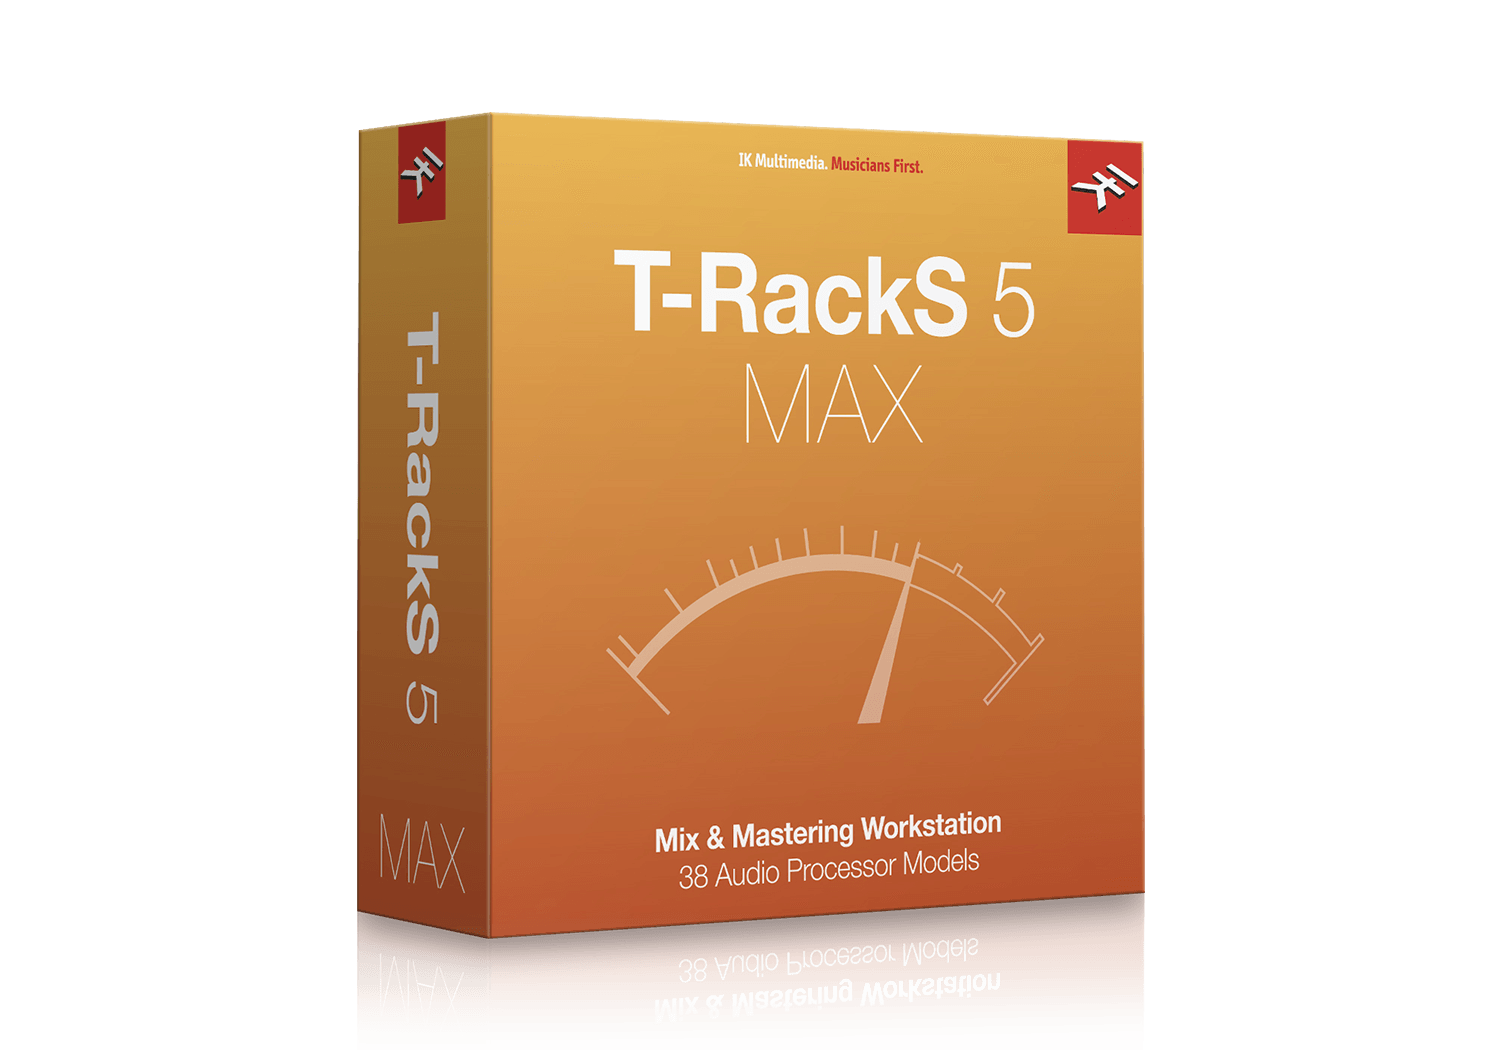 T-RackS 5 MAX